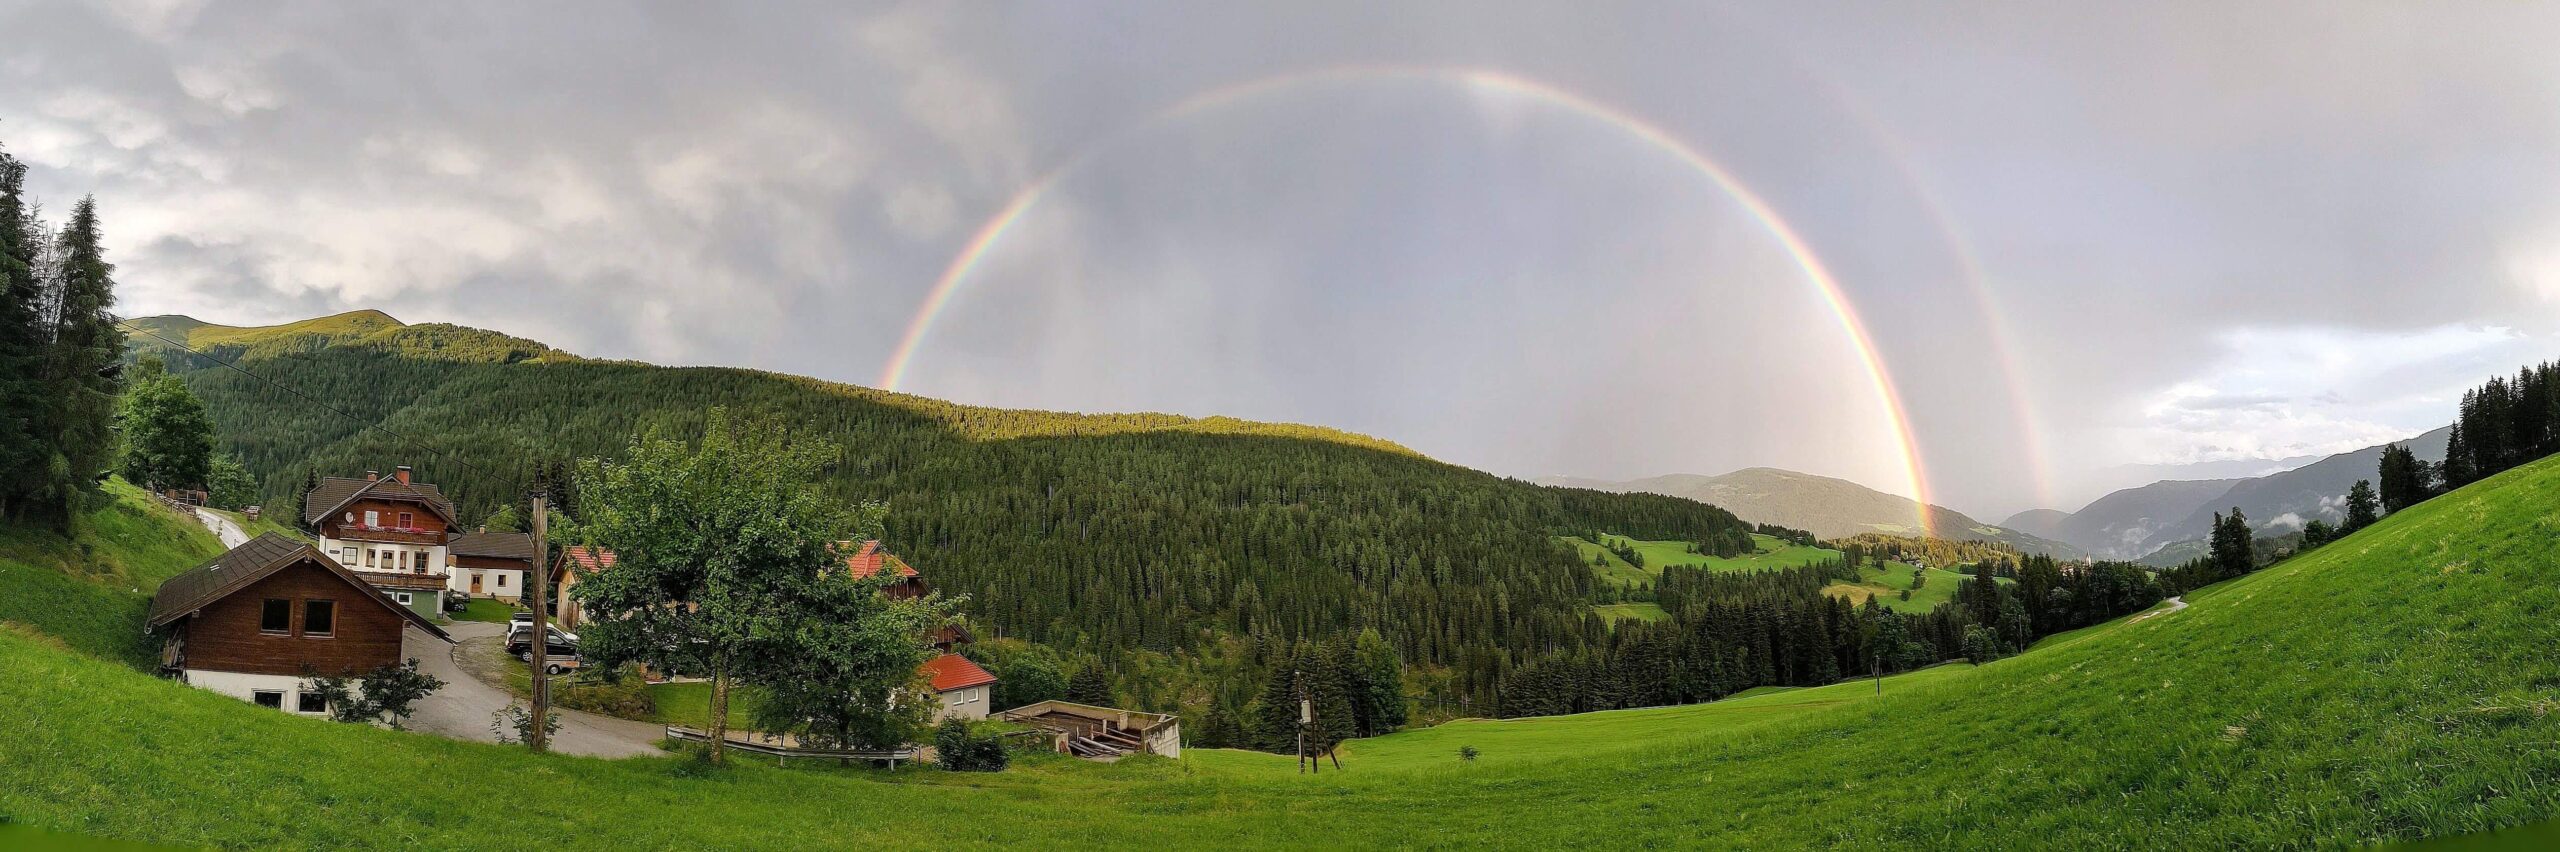 Doppelter Regenbogen über unserem Hof